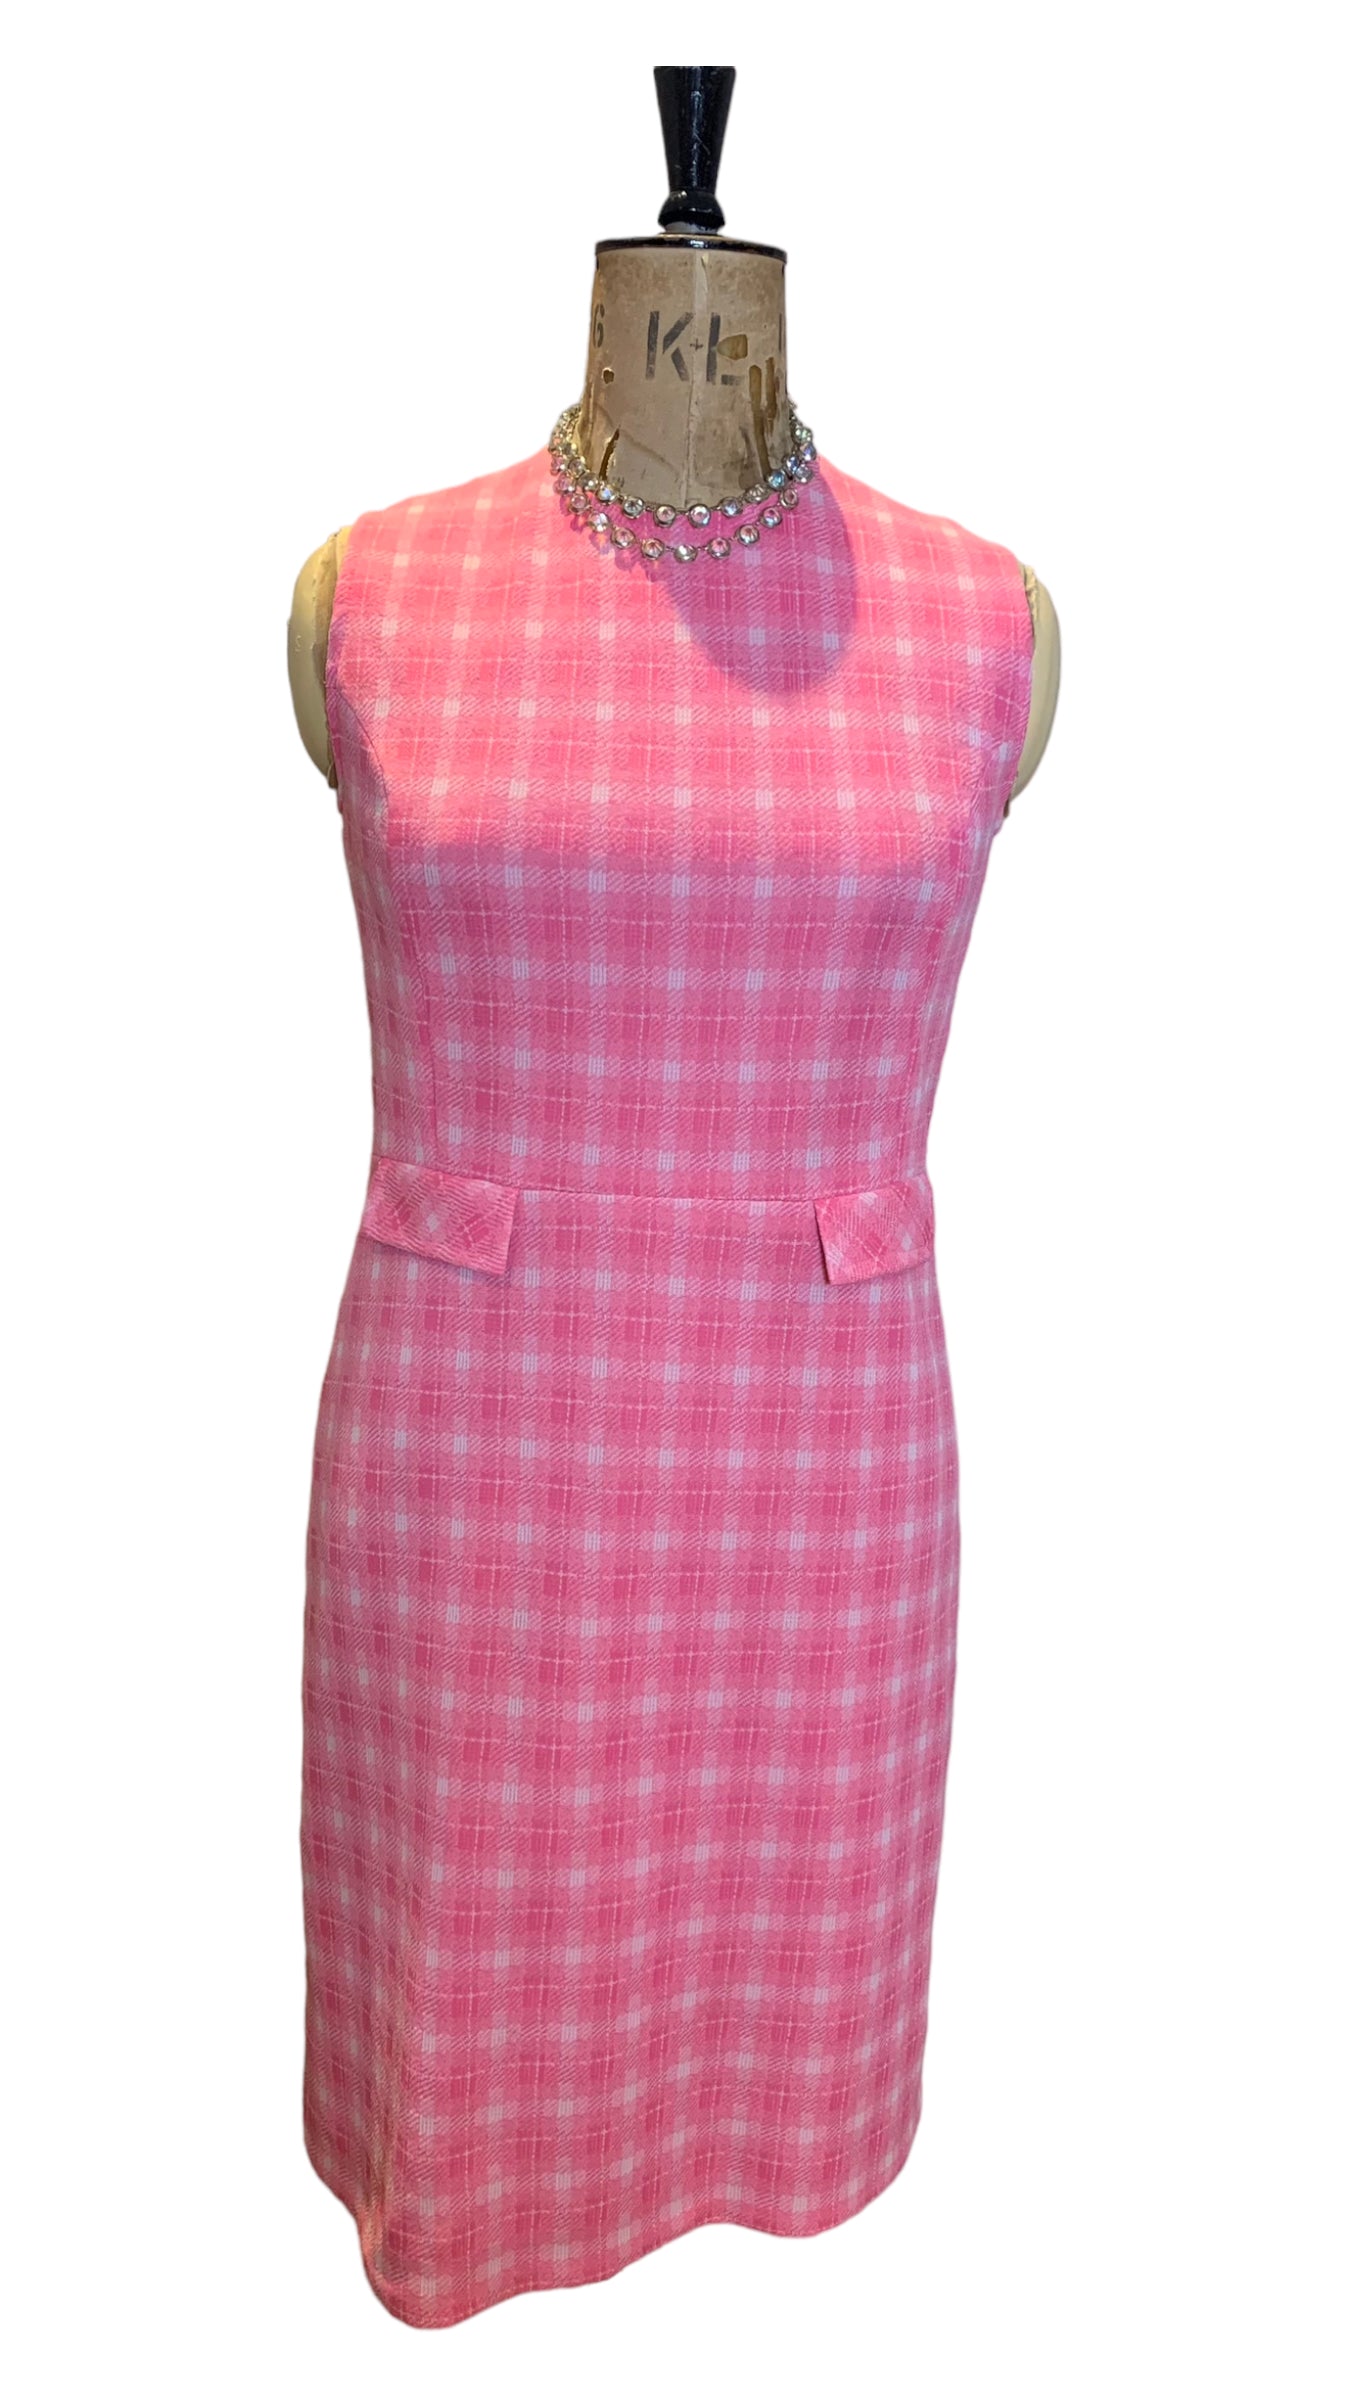 60s Pink Sleeveless Dress Size UK 10-12